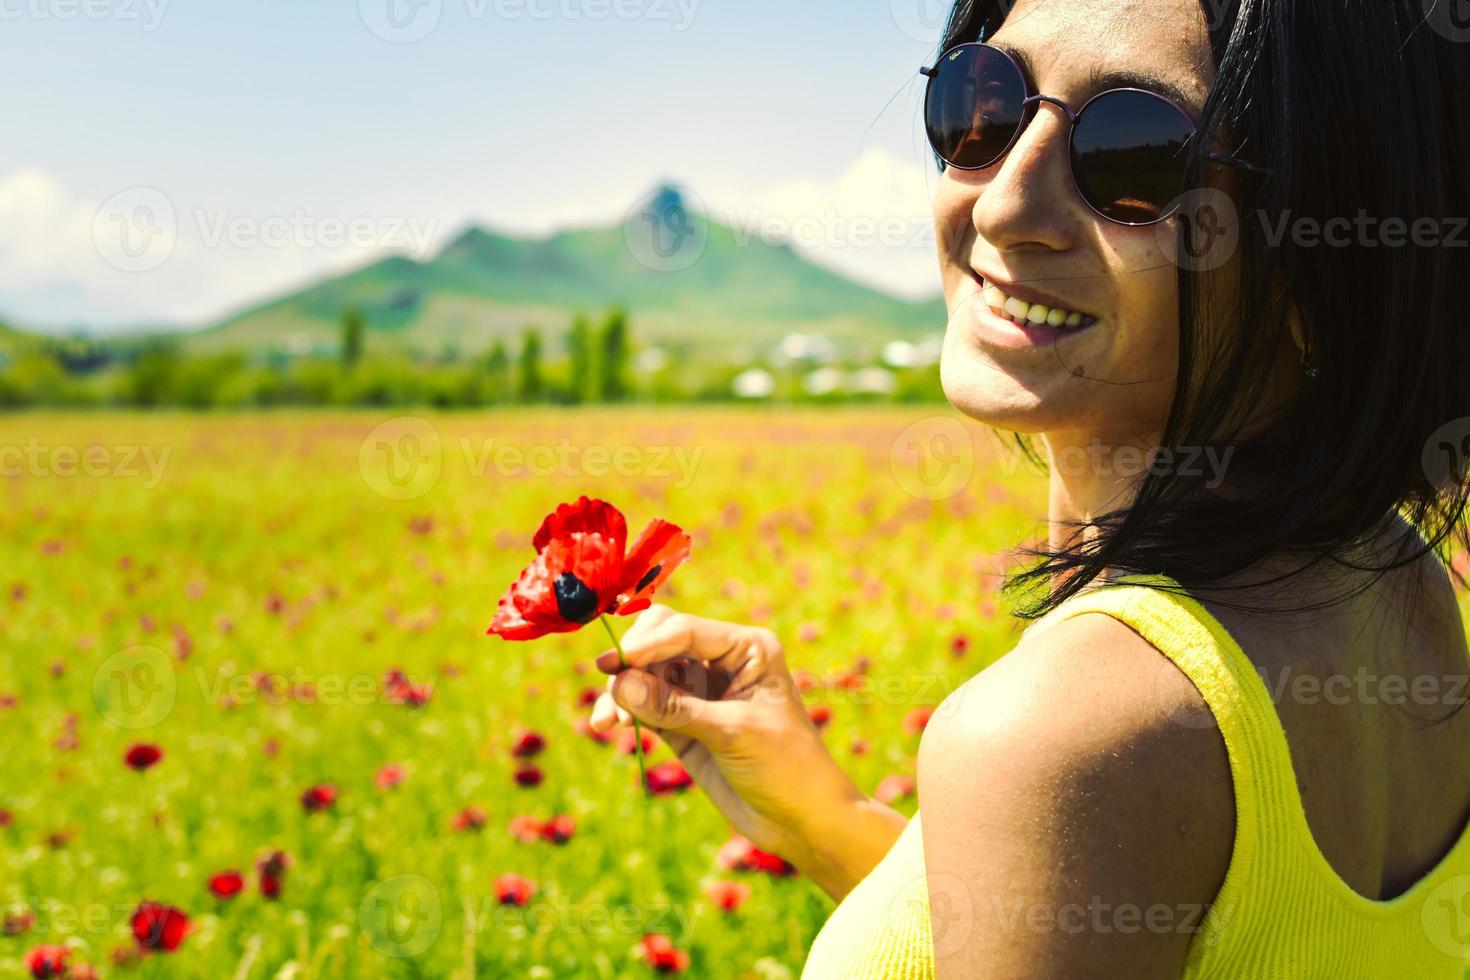 jonge, gelukkige blanke brunette vrouw met een enkele papaverbloem en geniet van een zonnige dag in het veld foto